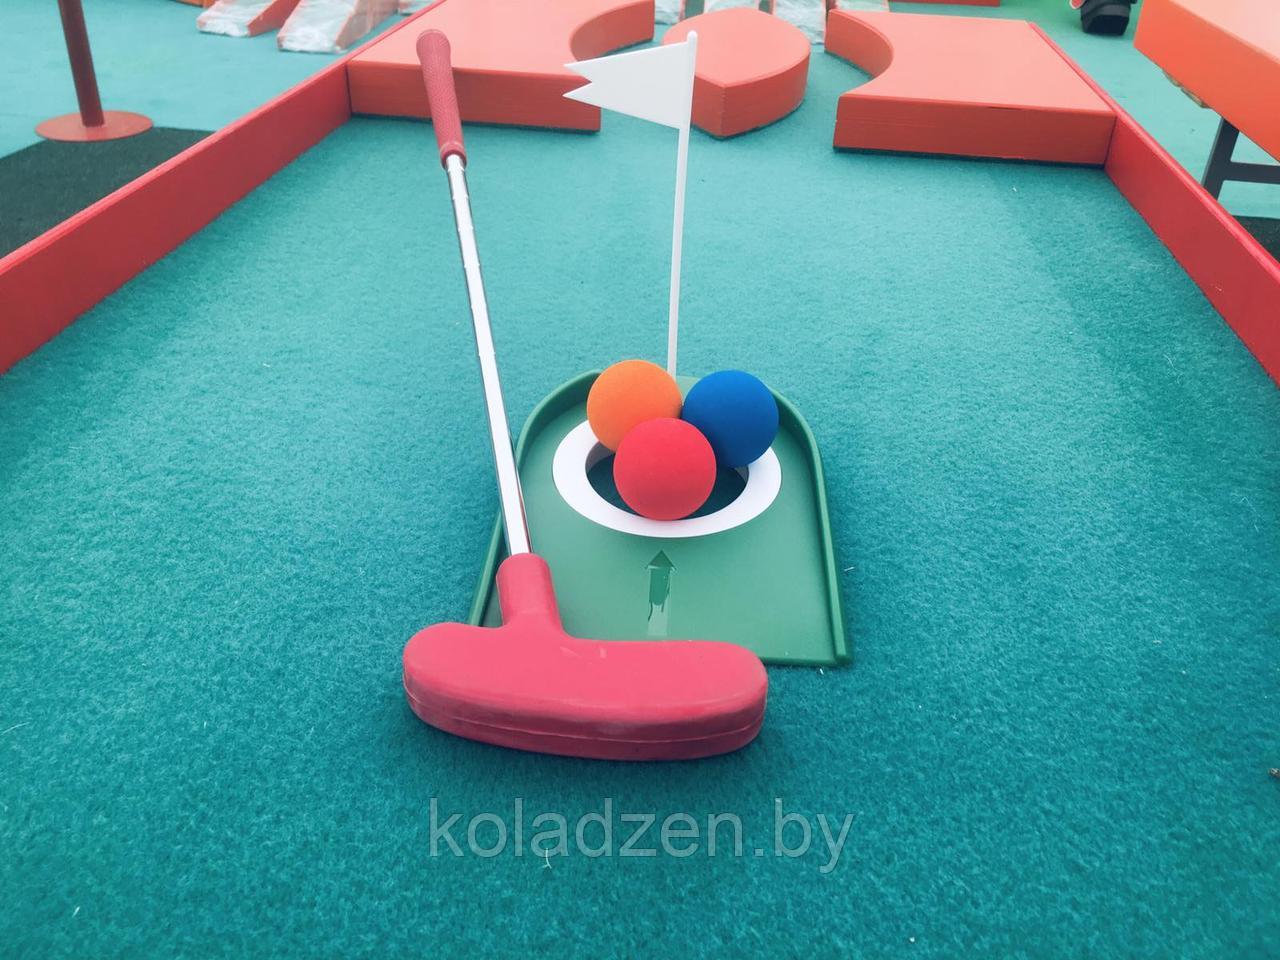 Мини-гольф набор для игры., фото 1